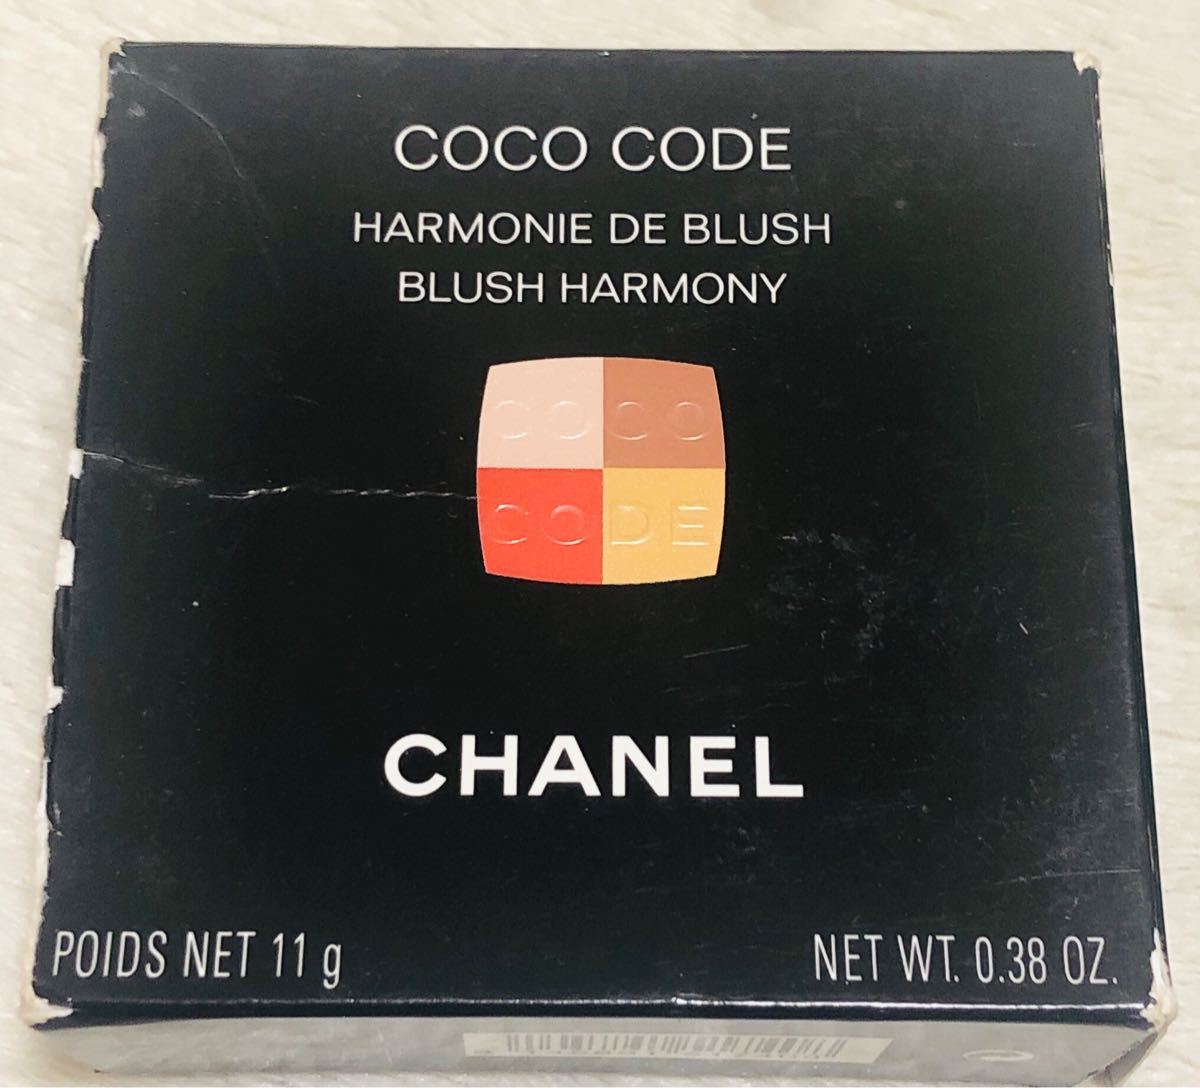 CHANEL シャネル ココ コード チークカラー 専用ブラシセット